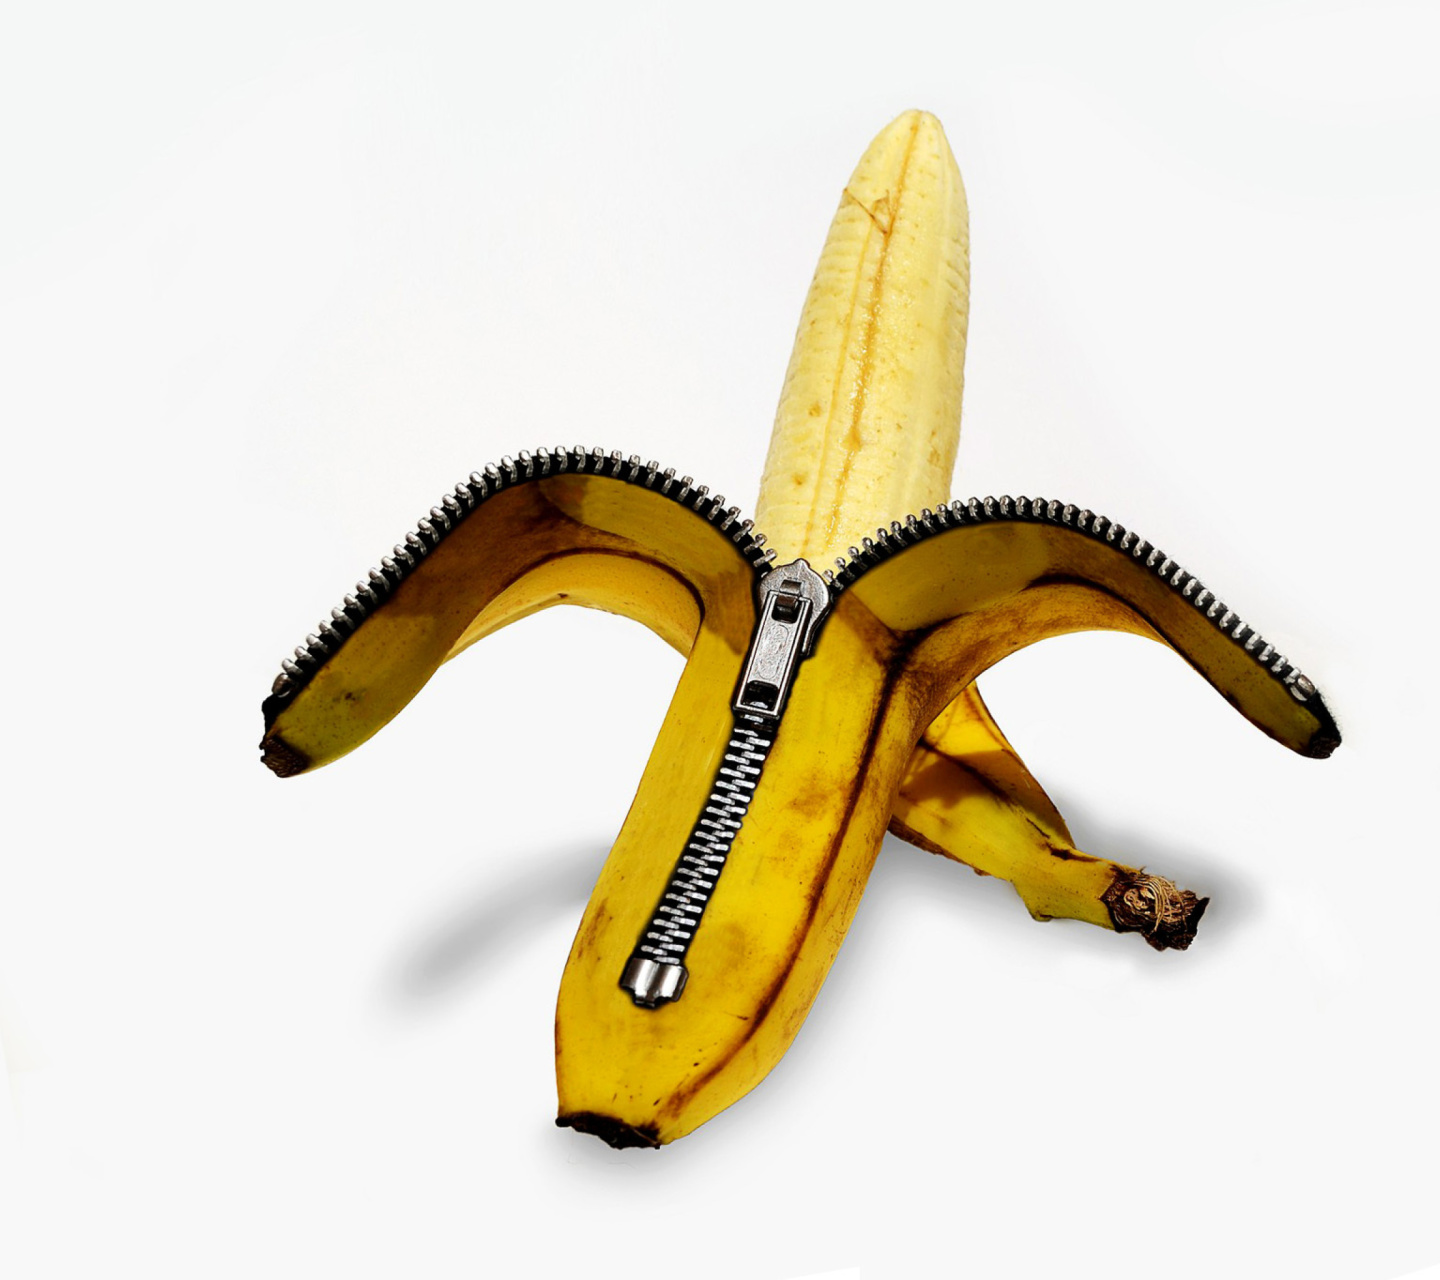 Funny banana as zipper screenshot #1 1440x1280